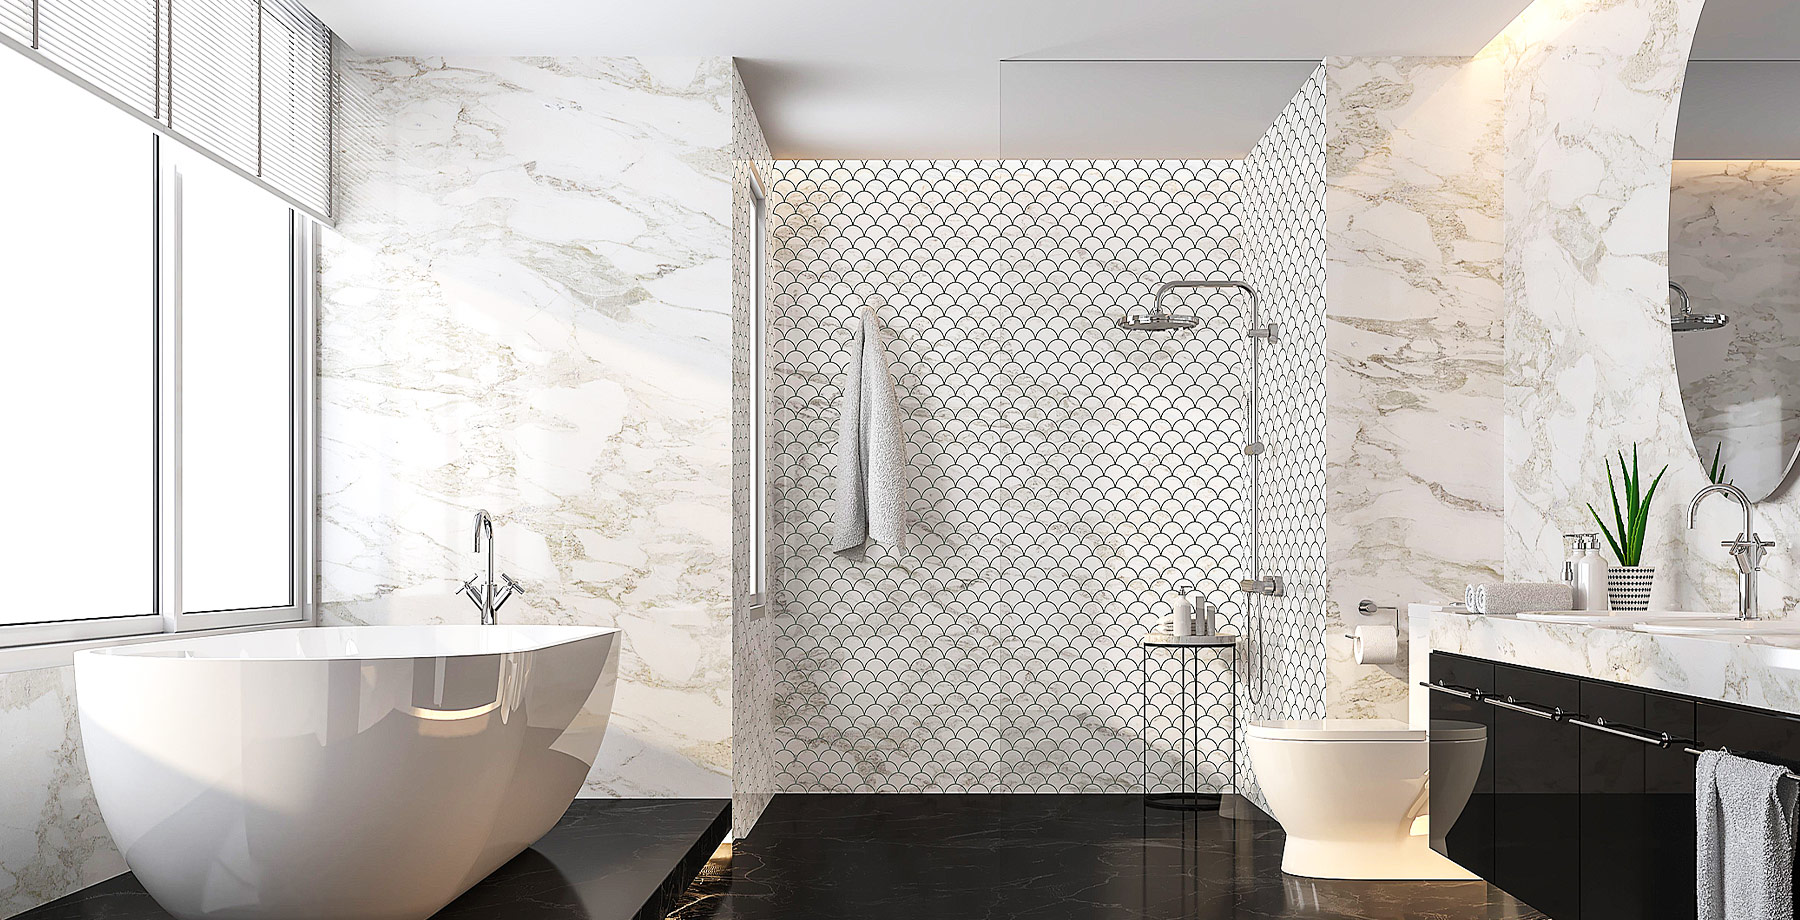 Brookline’s Bathroom Remodeling & Design